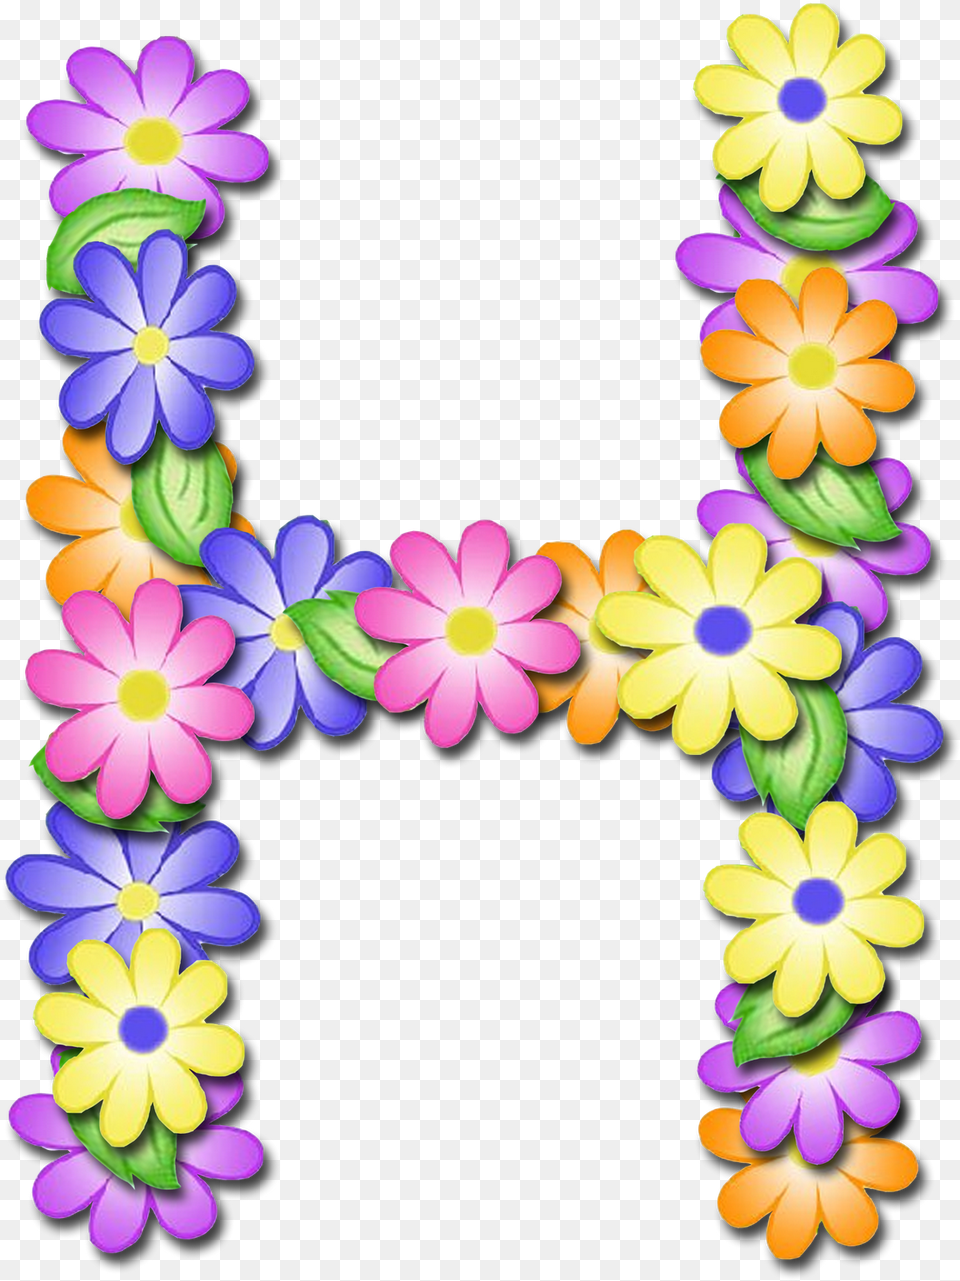 Letras L Con Flores, Accessories, Flower, Flower Arrangement, Ornament Free Transparent Png